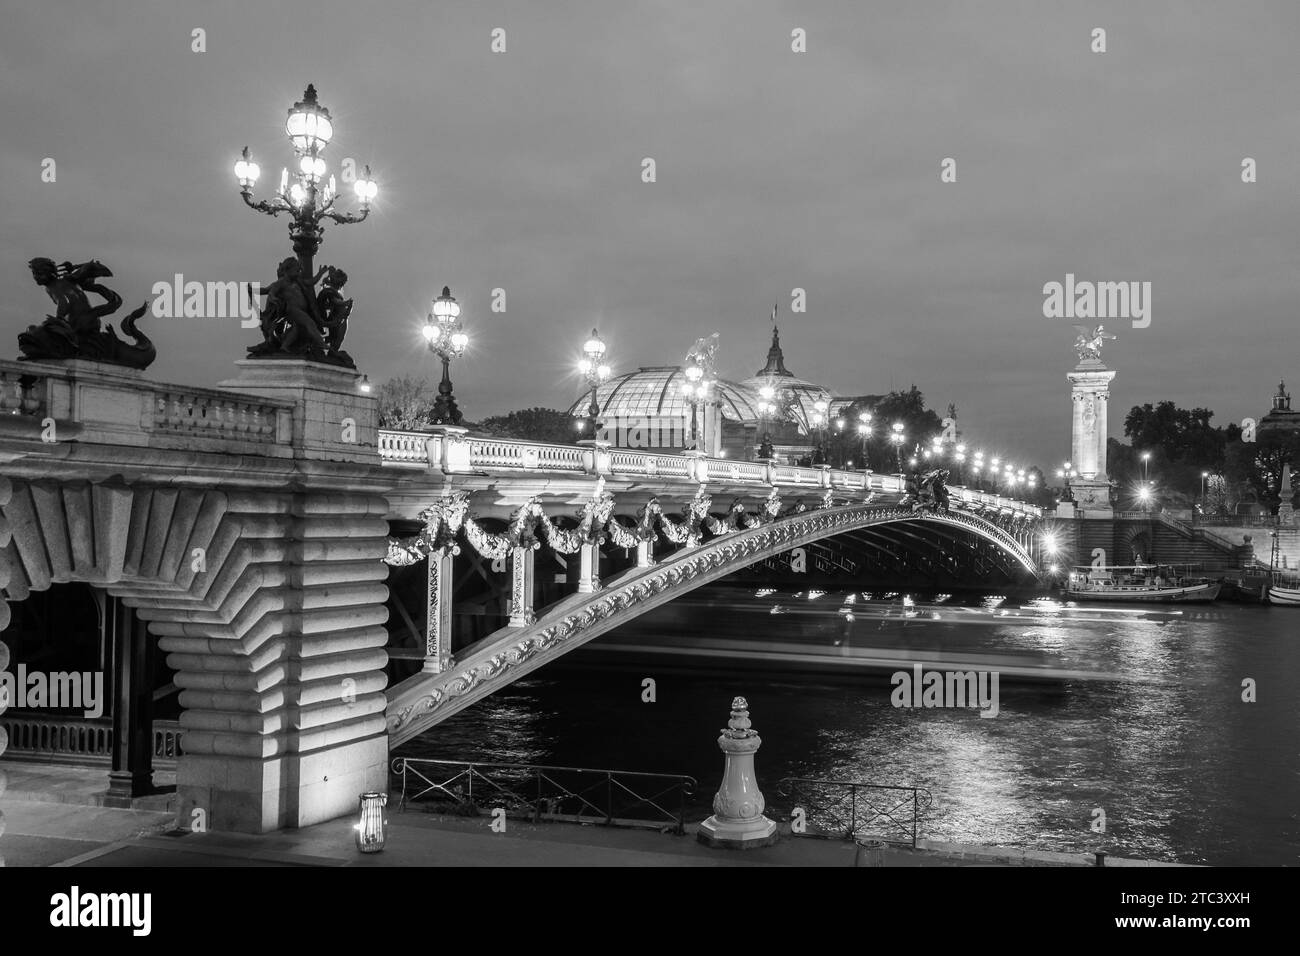 Pont Alexandre III illuminato nel tardo pomeriggio. Parigi, Francia. Immagine in bianco e nero. Foto Stock